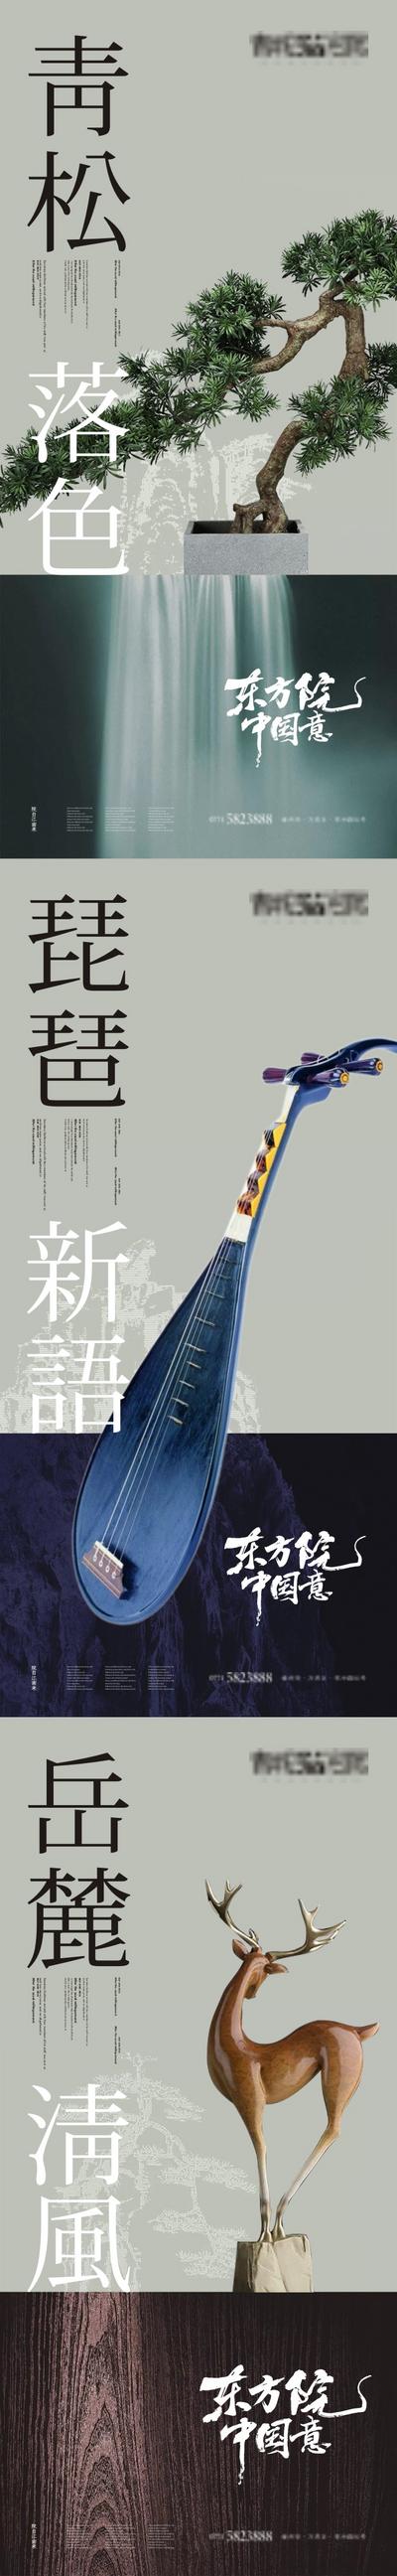 南门网 海报 房地产 中式 中国风 琵琶 松狮 麋鹿 系列